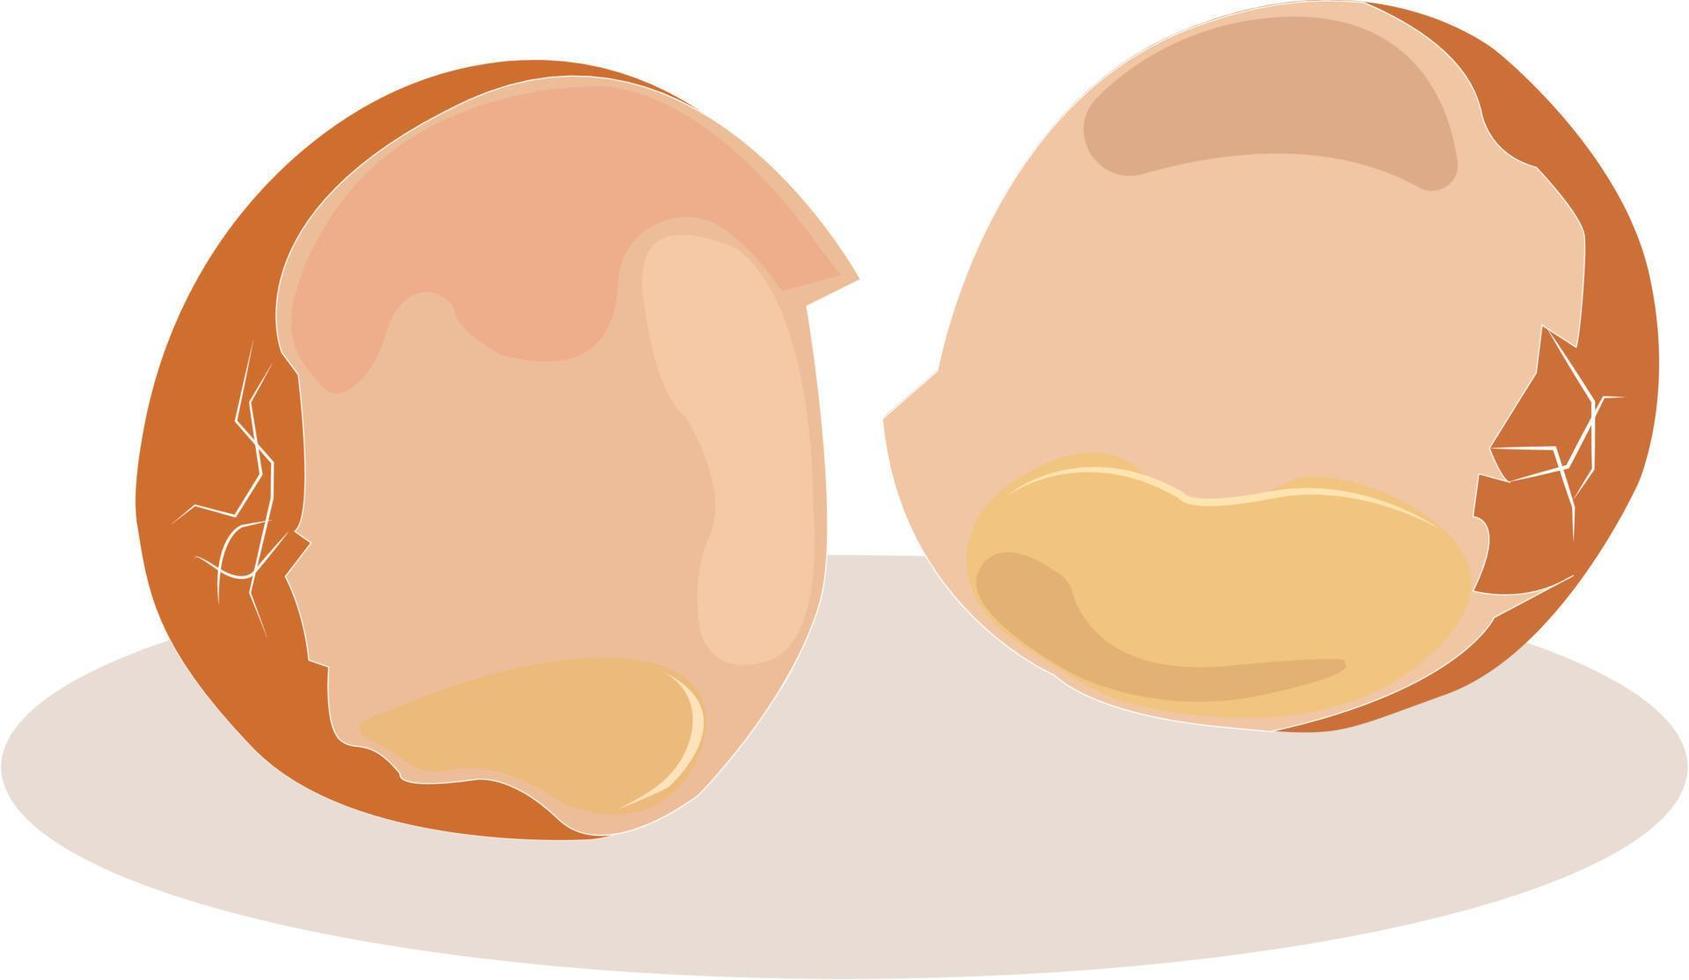 Egg shell, illustration, vector on white background.